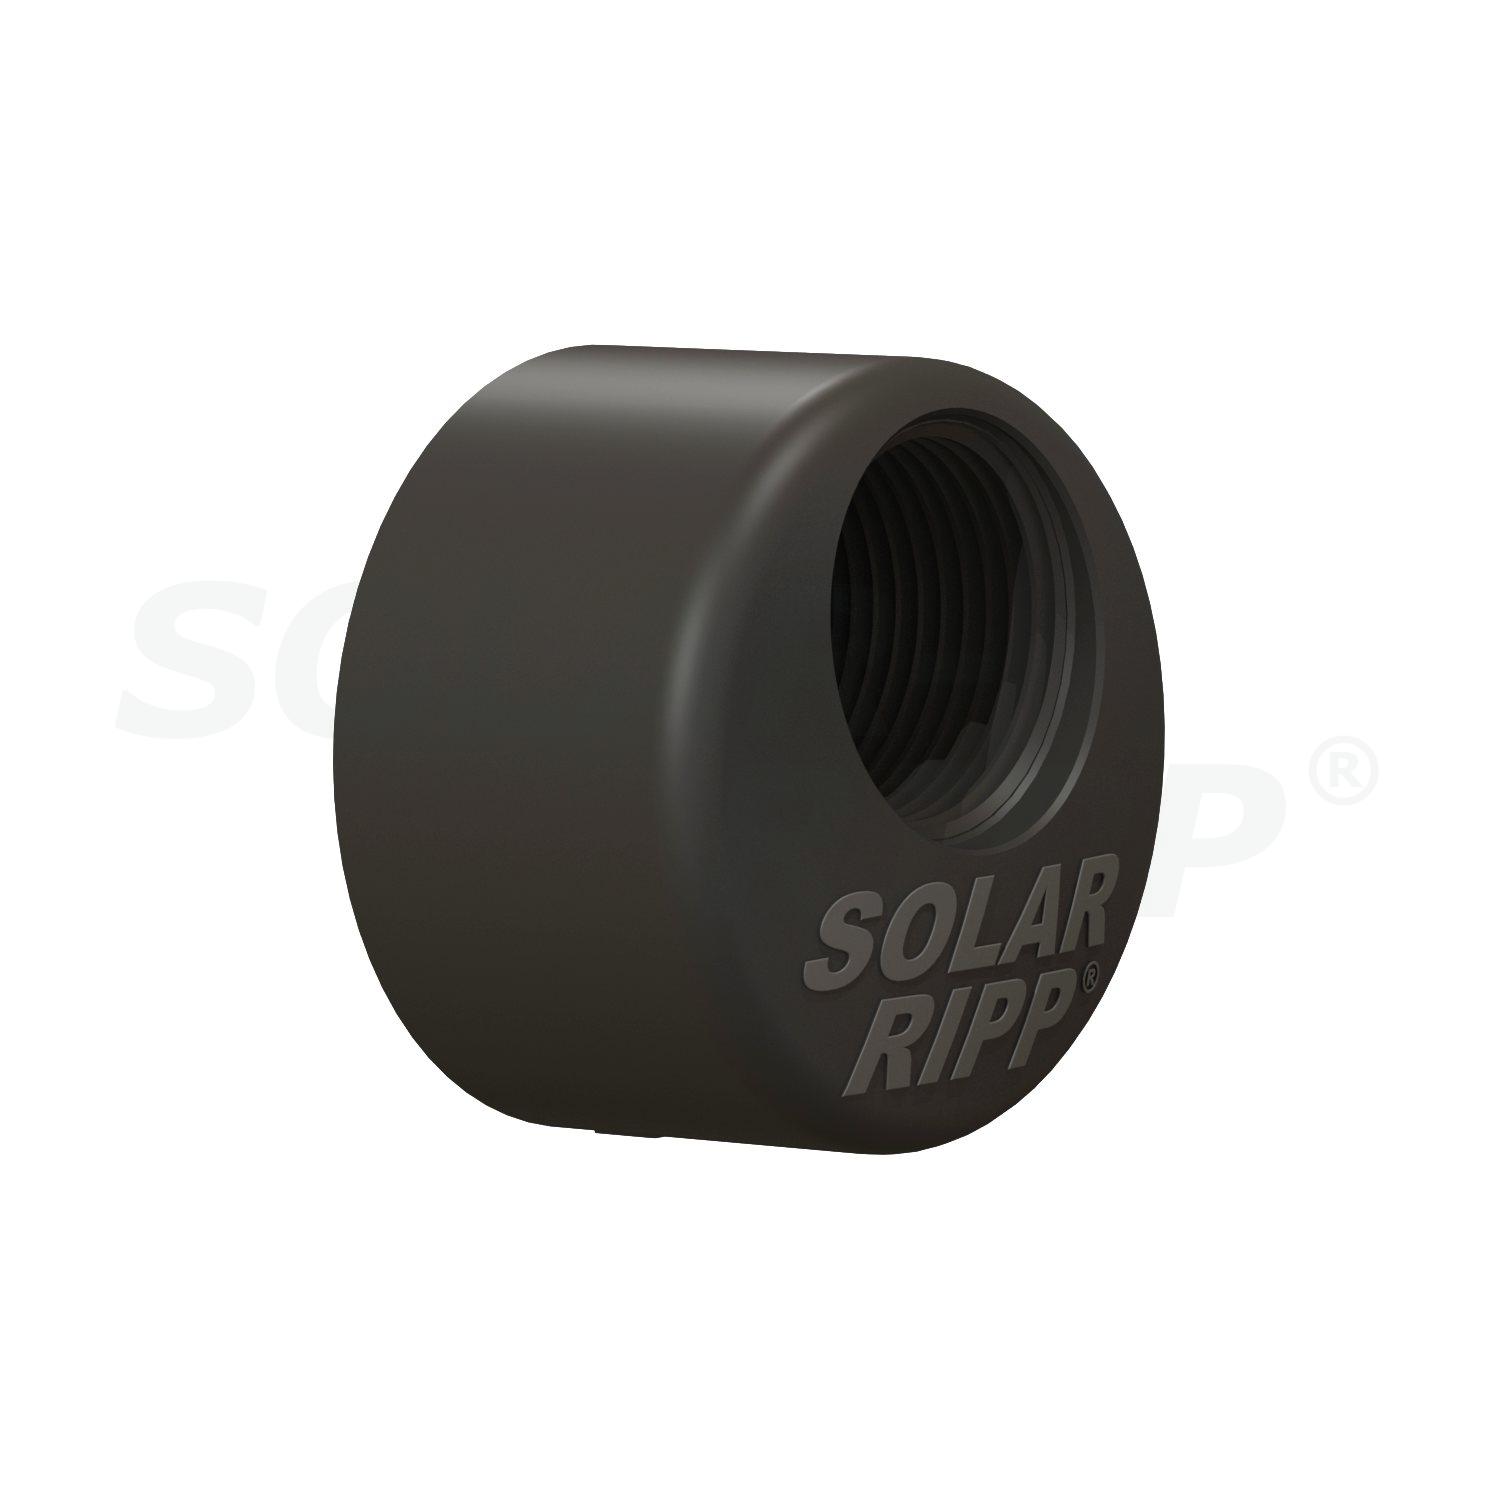 Extremo distribuidor SOLAR-RIPP ® de 50 mm con rosca interna de 3/4" para soldar